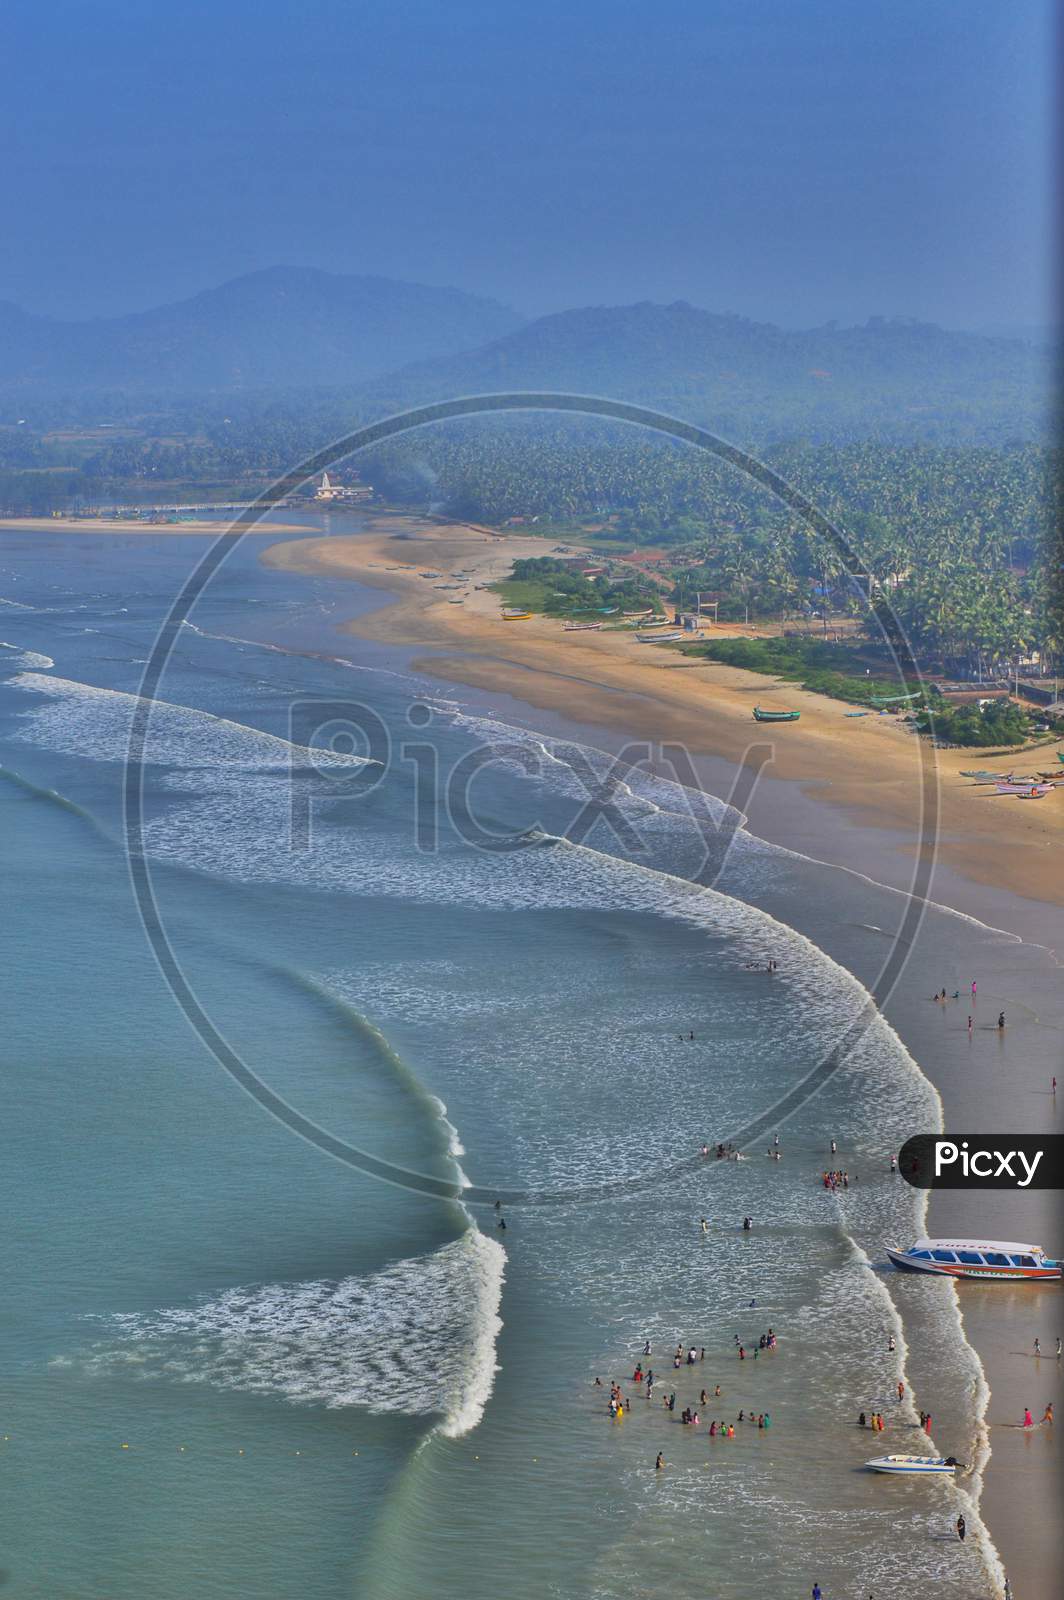 A Different View of Murudeshwara beach